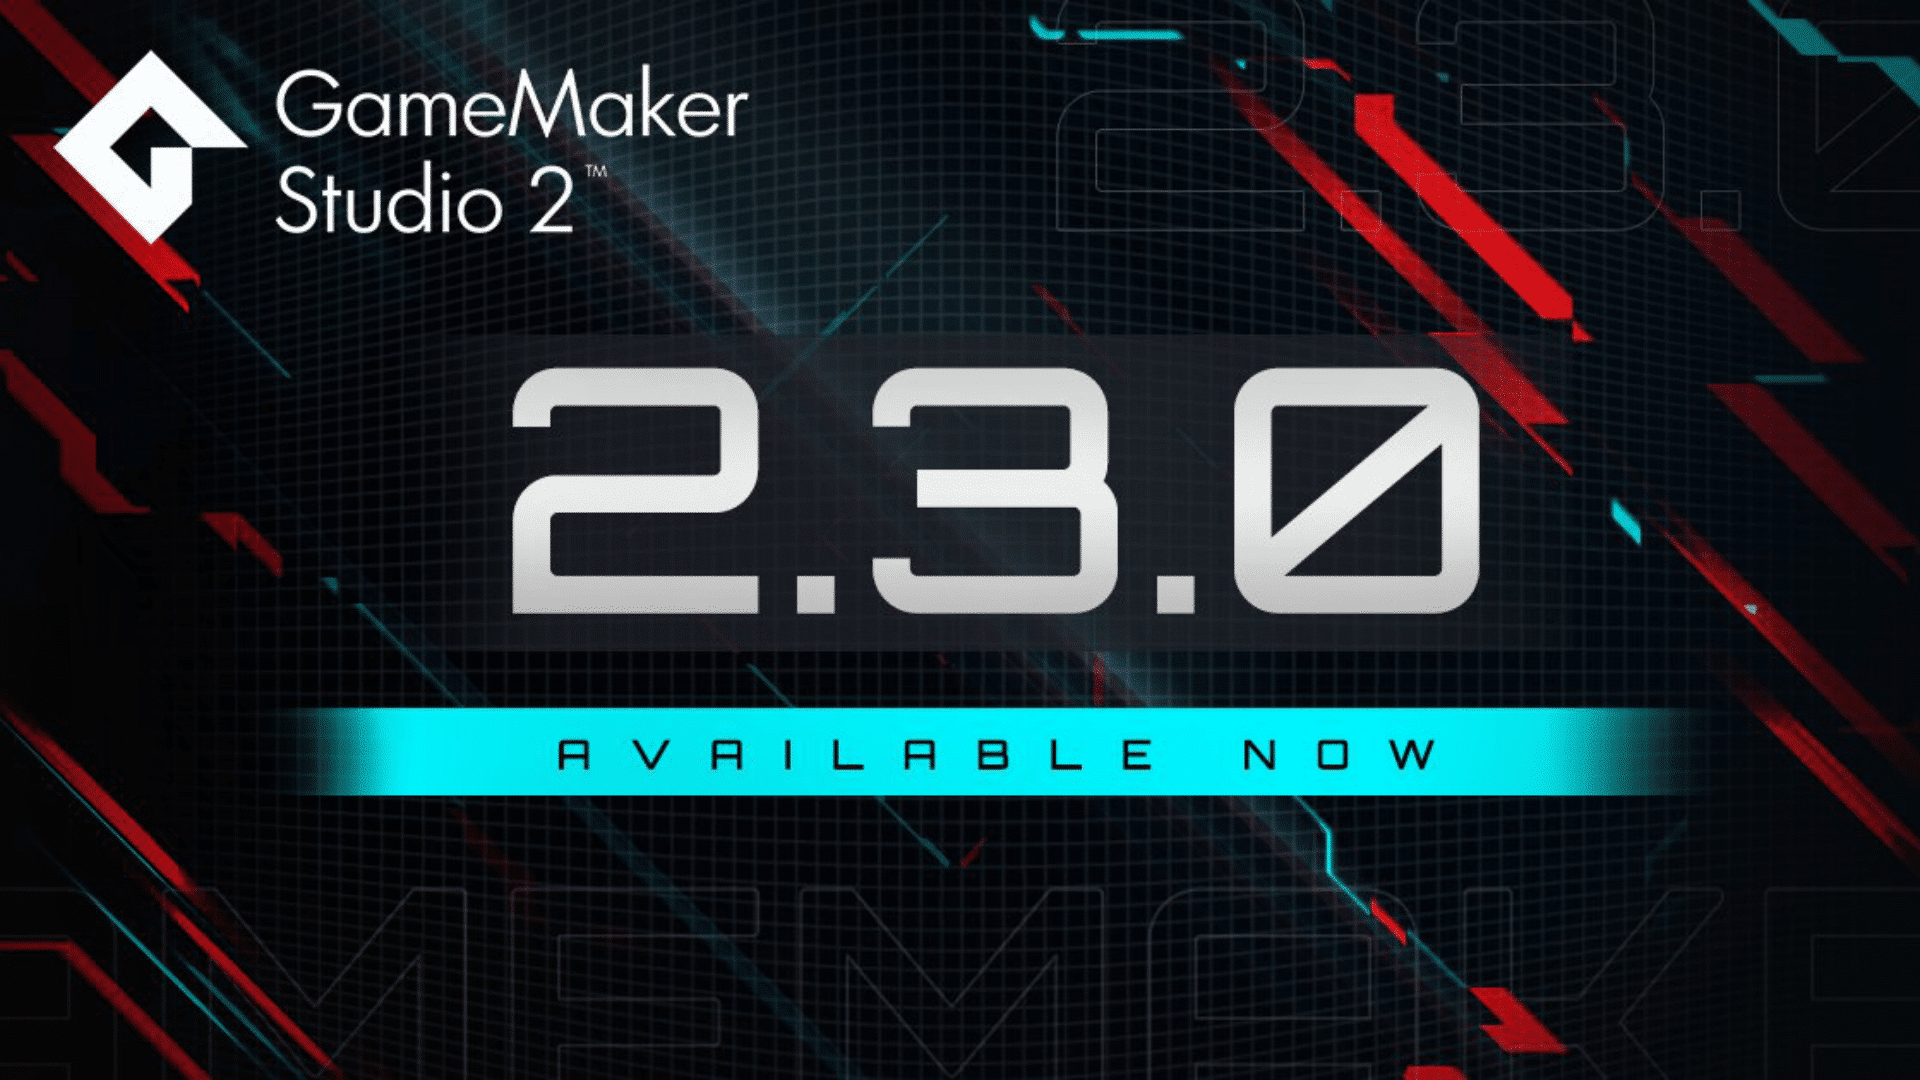 game maker studio 2 ide download